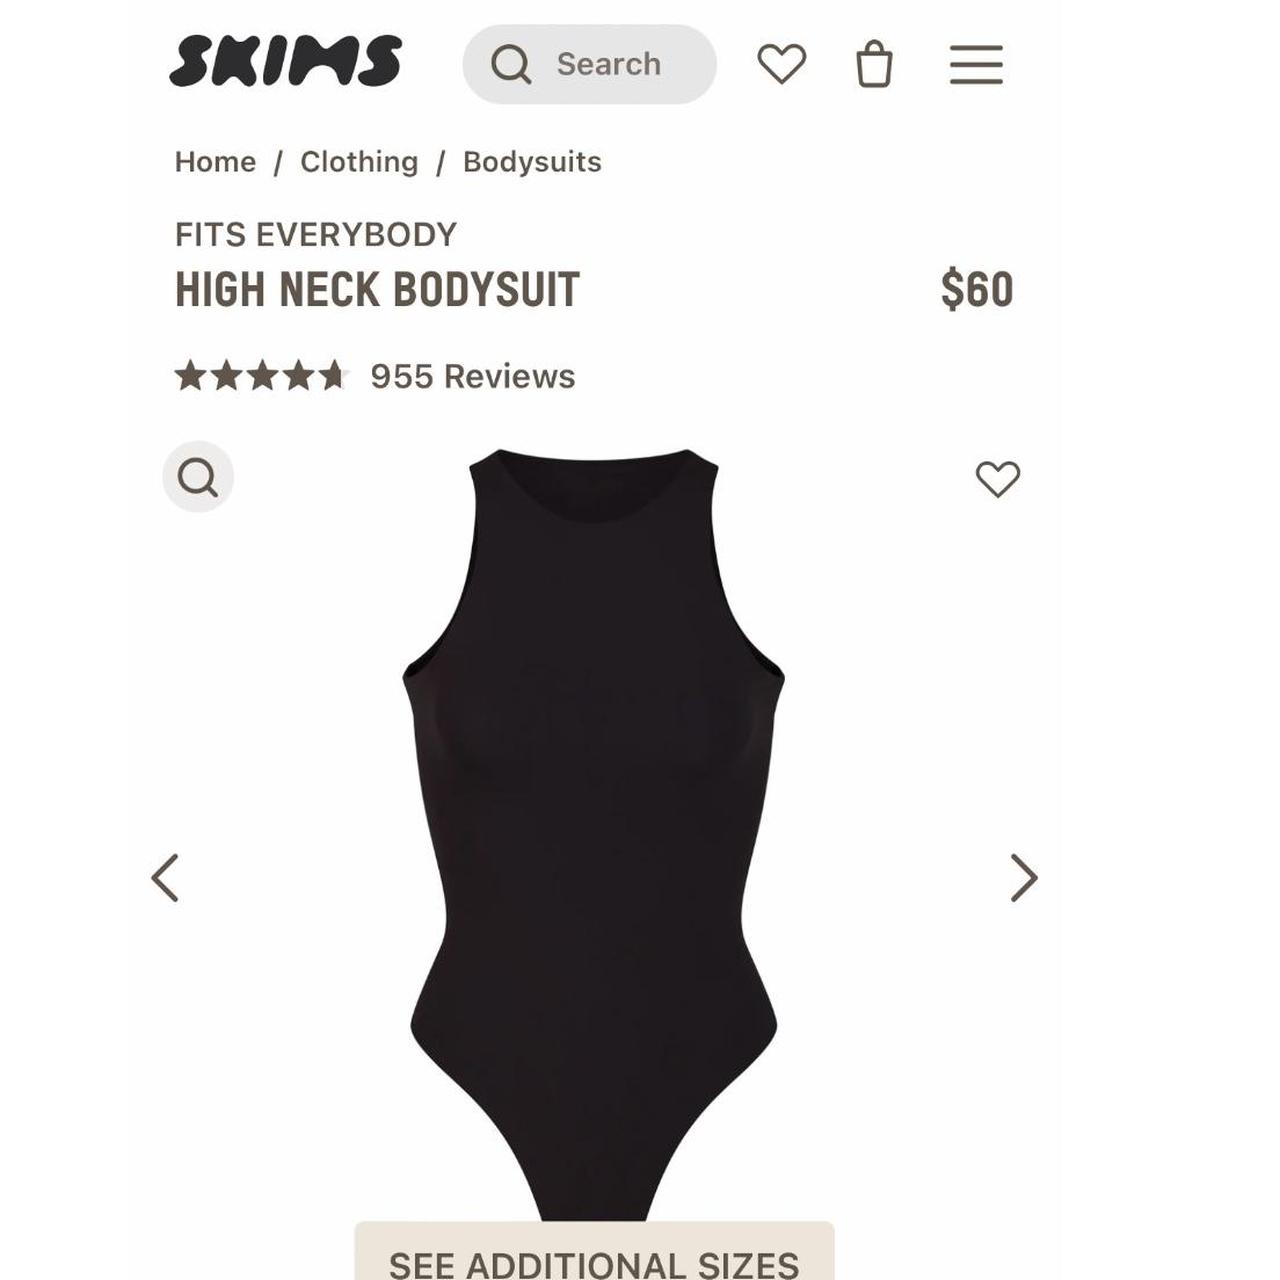 Skims fits everybody high neck bodysuit in Onyx - Depop